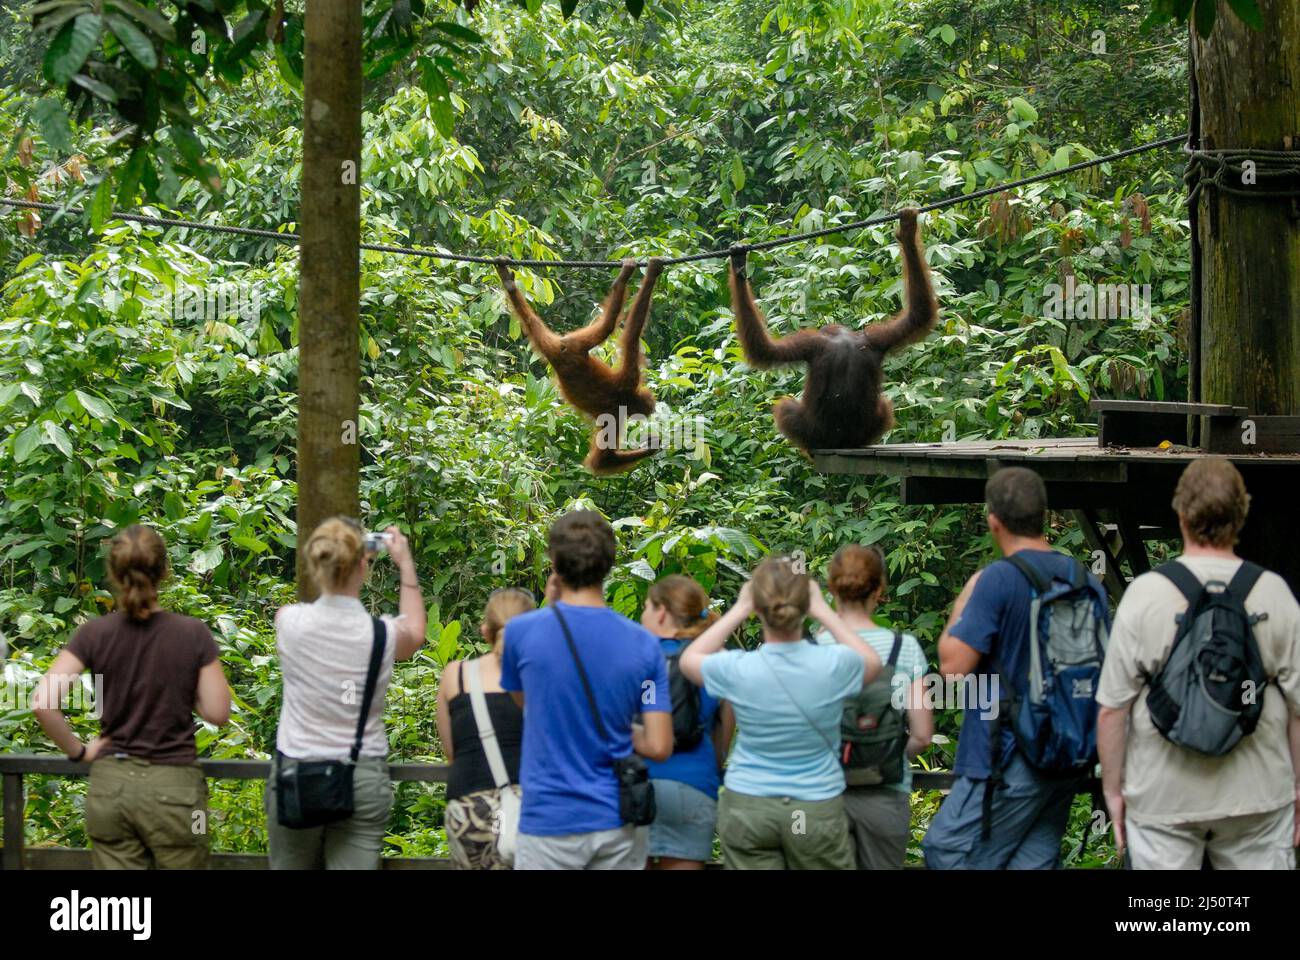 Los turistas observan a los orangutanes jugando en el Centro de Rehabilitación de Orangutan Sepilok. Foto de stock